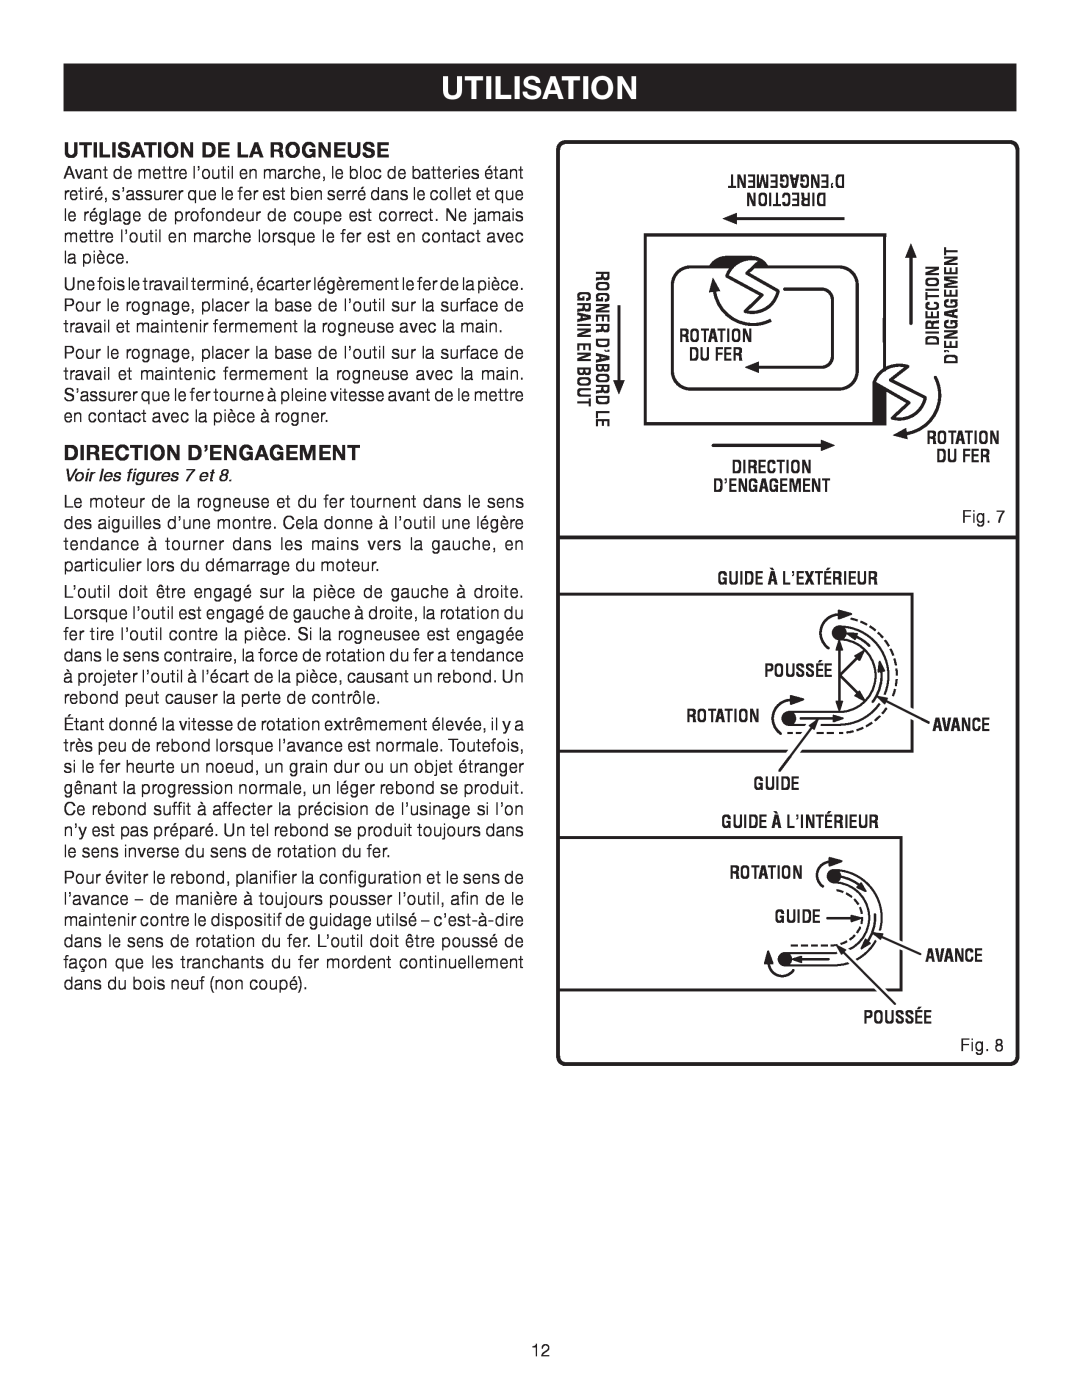 Ryobi P600 manual Utilisation De La Rogneuse, DIRECTION D’ENGAGEMENT Voir les figures 7 et 